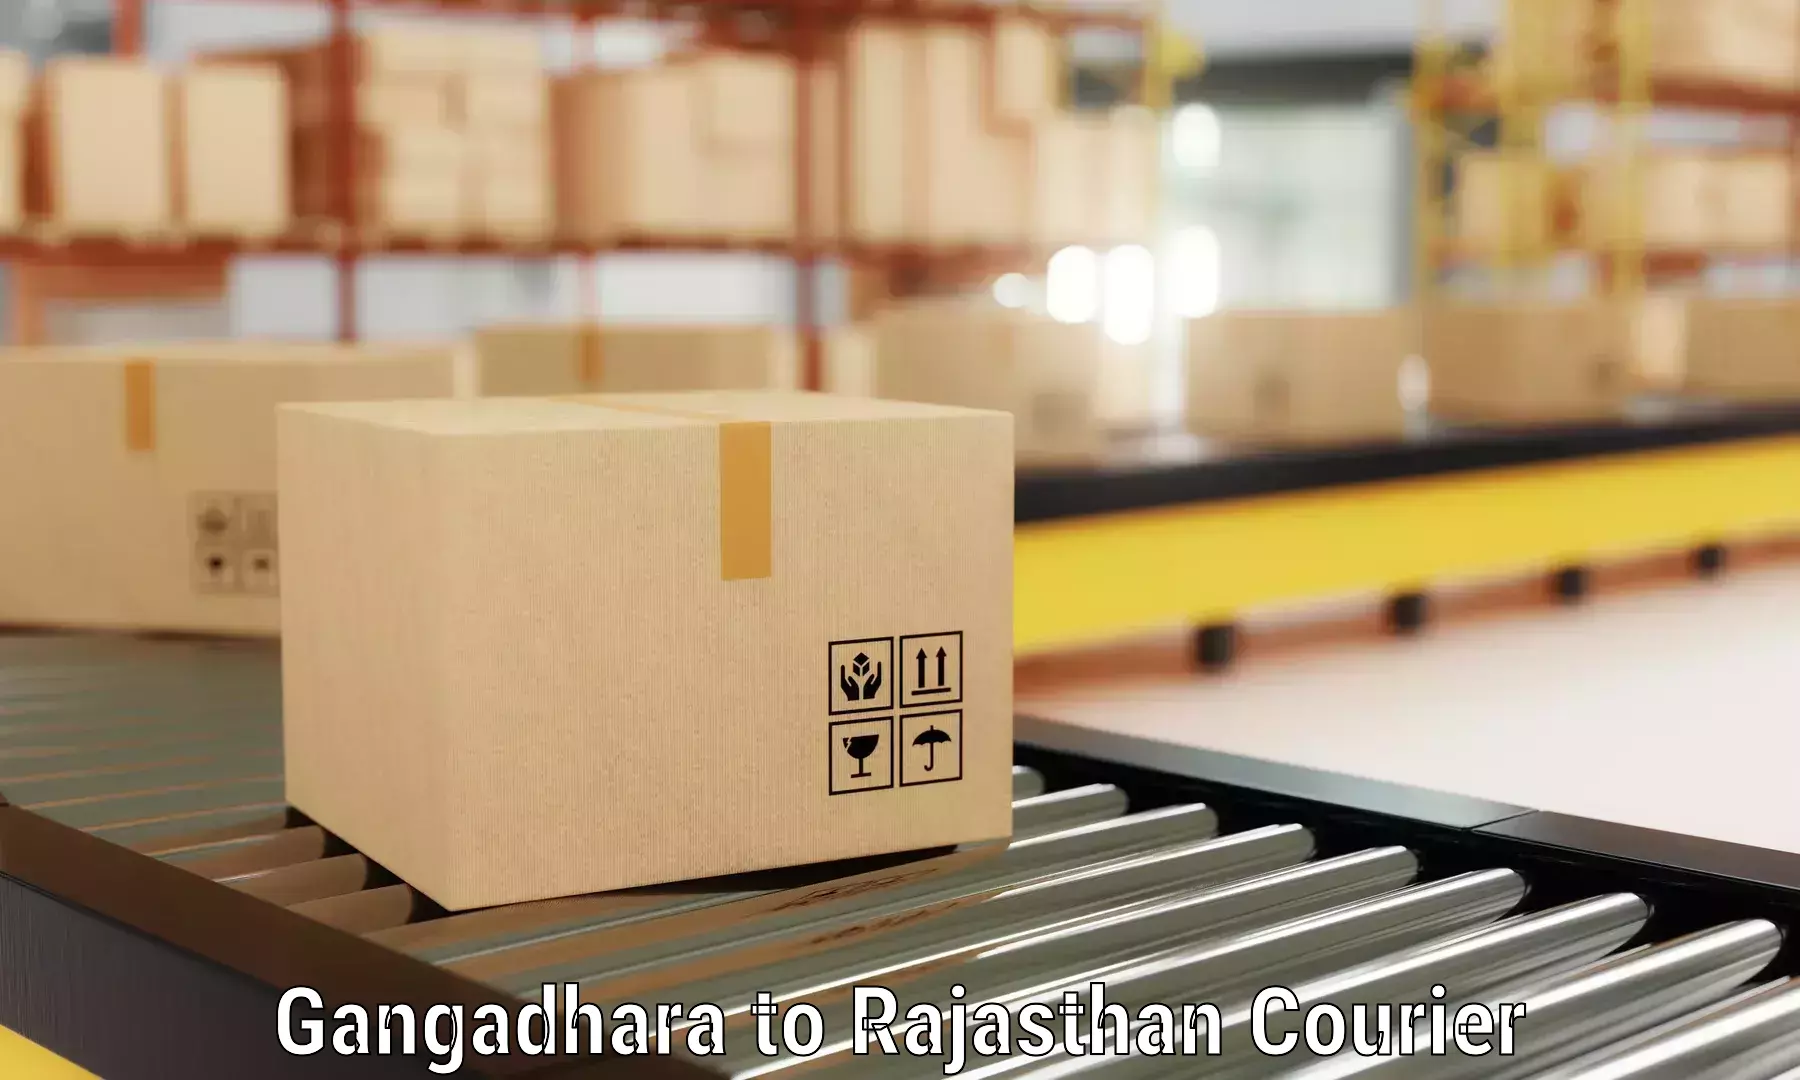 Furniture moving service Gangadhara to Kotputli